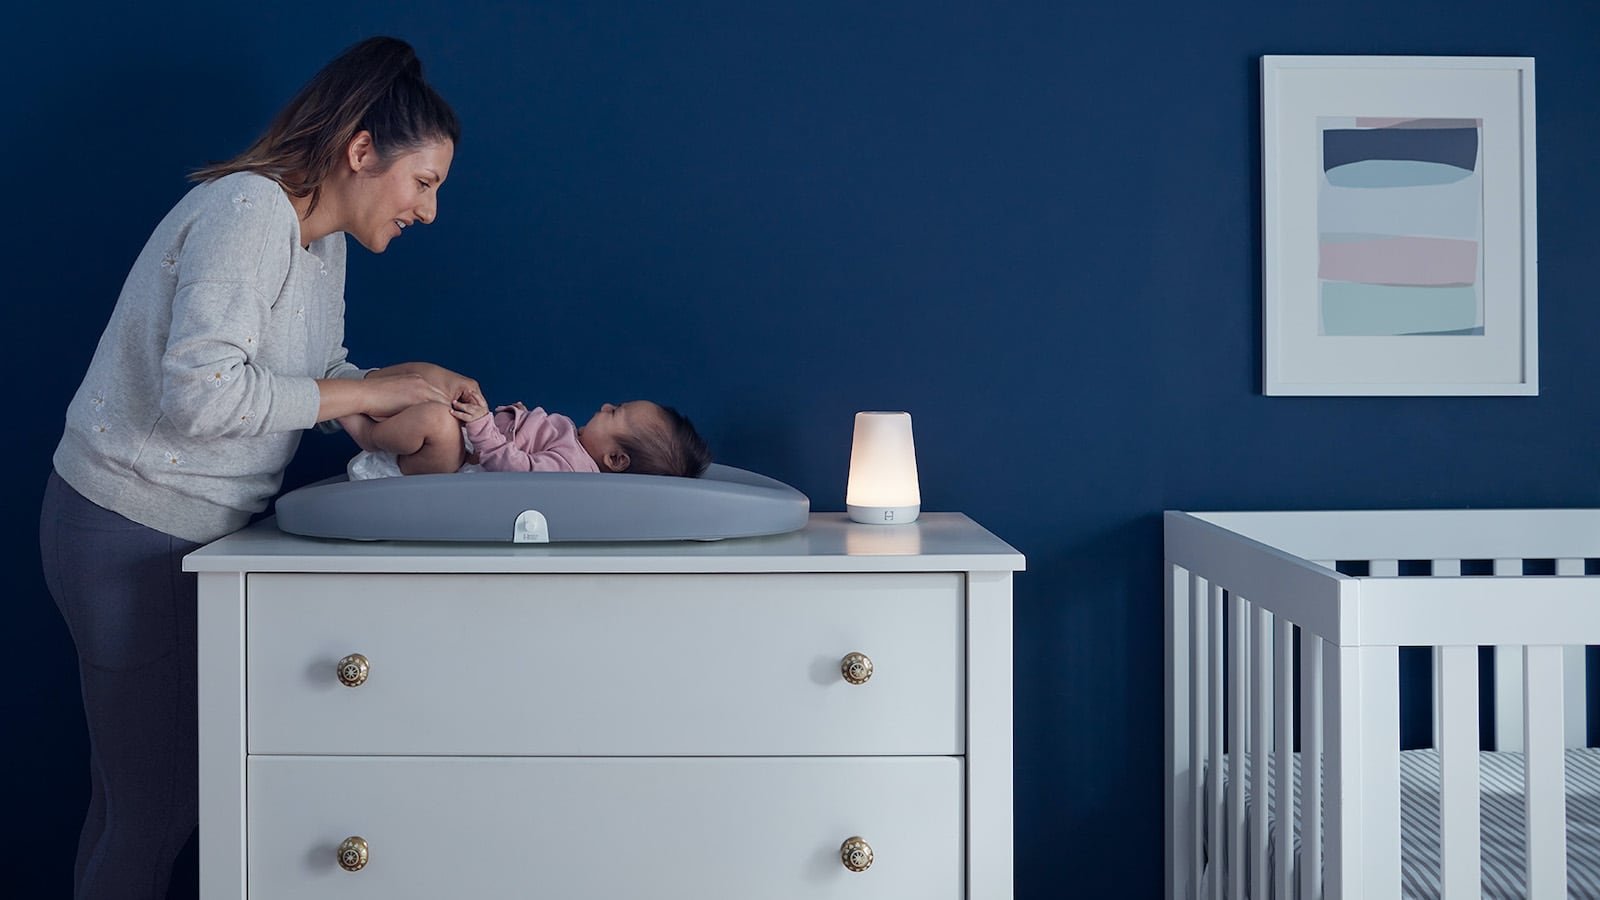 Hatch Rest+ Wi-Fi Night-Light helps children fall asleep